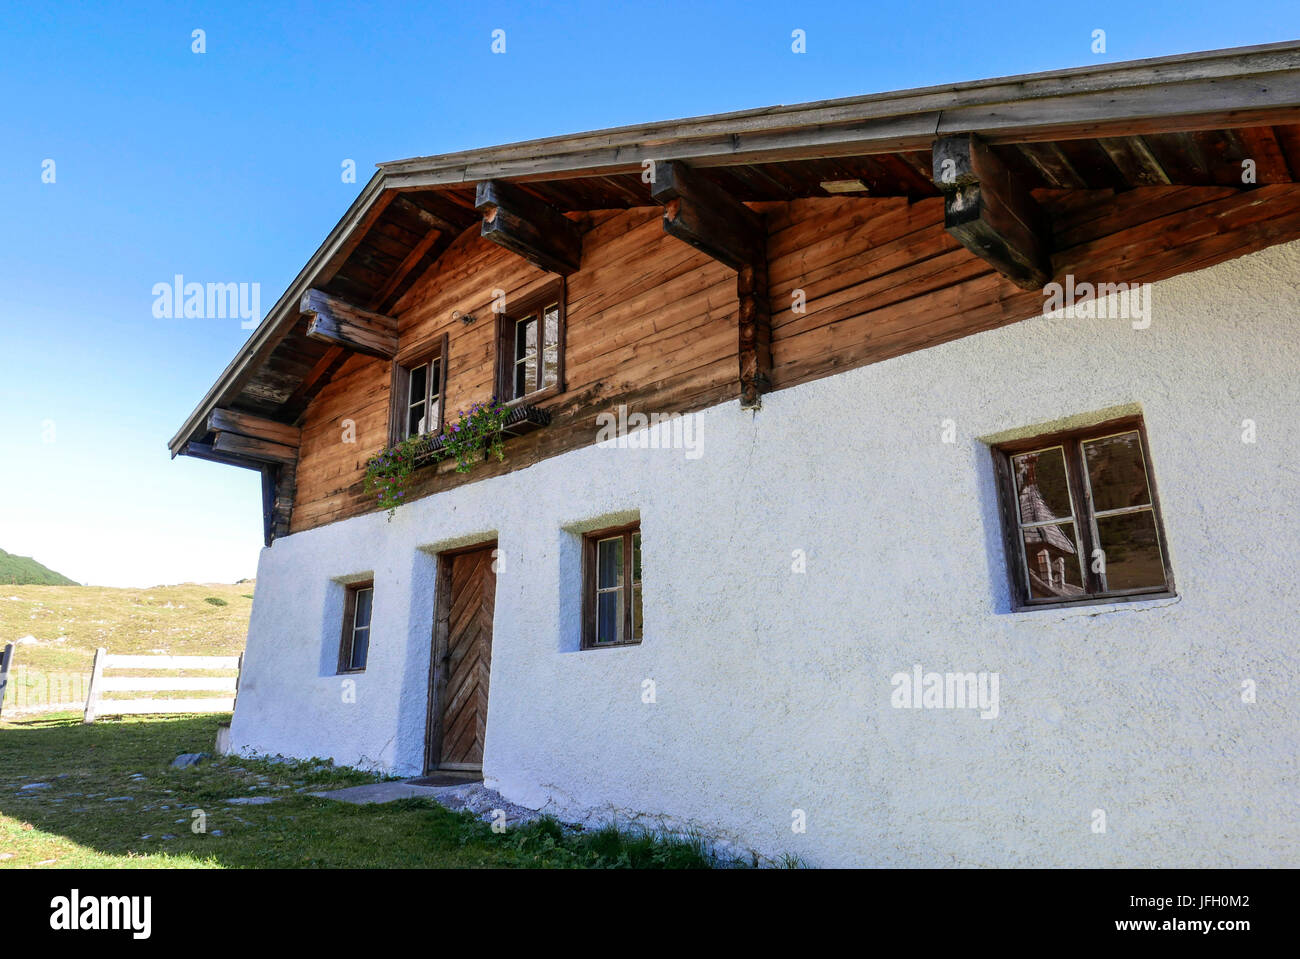 Alpine hut on the Hochalm in the Karwendeltal, Karwendel, Tyrol Stock Photo